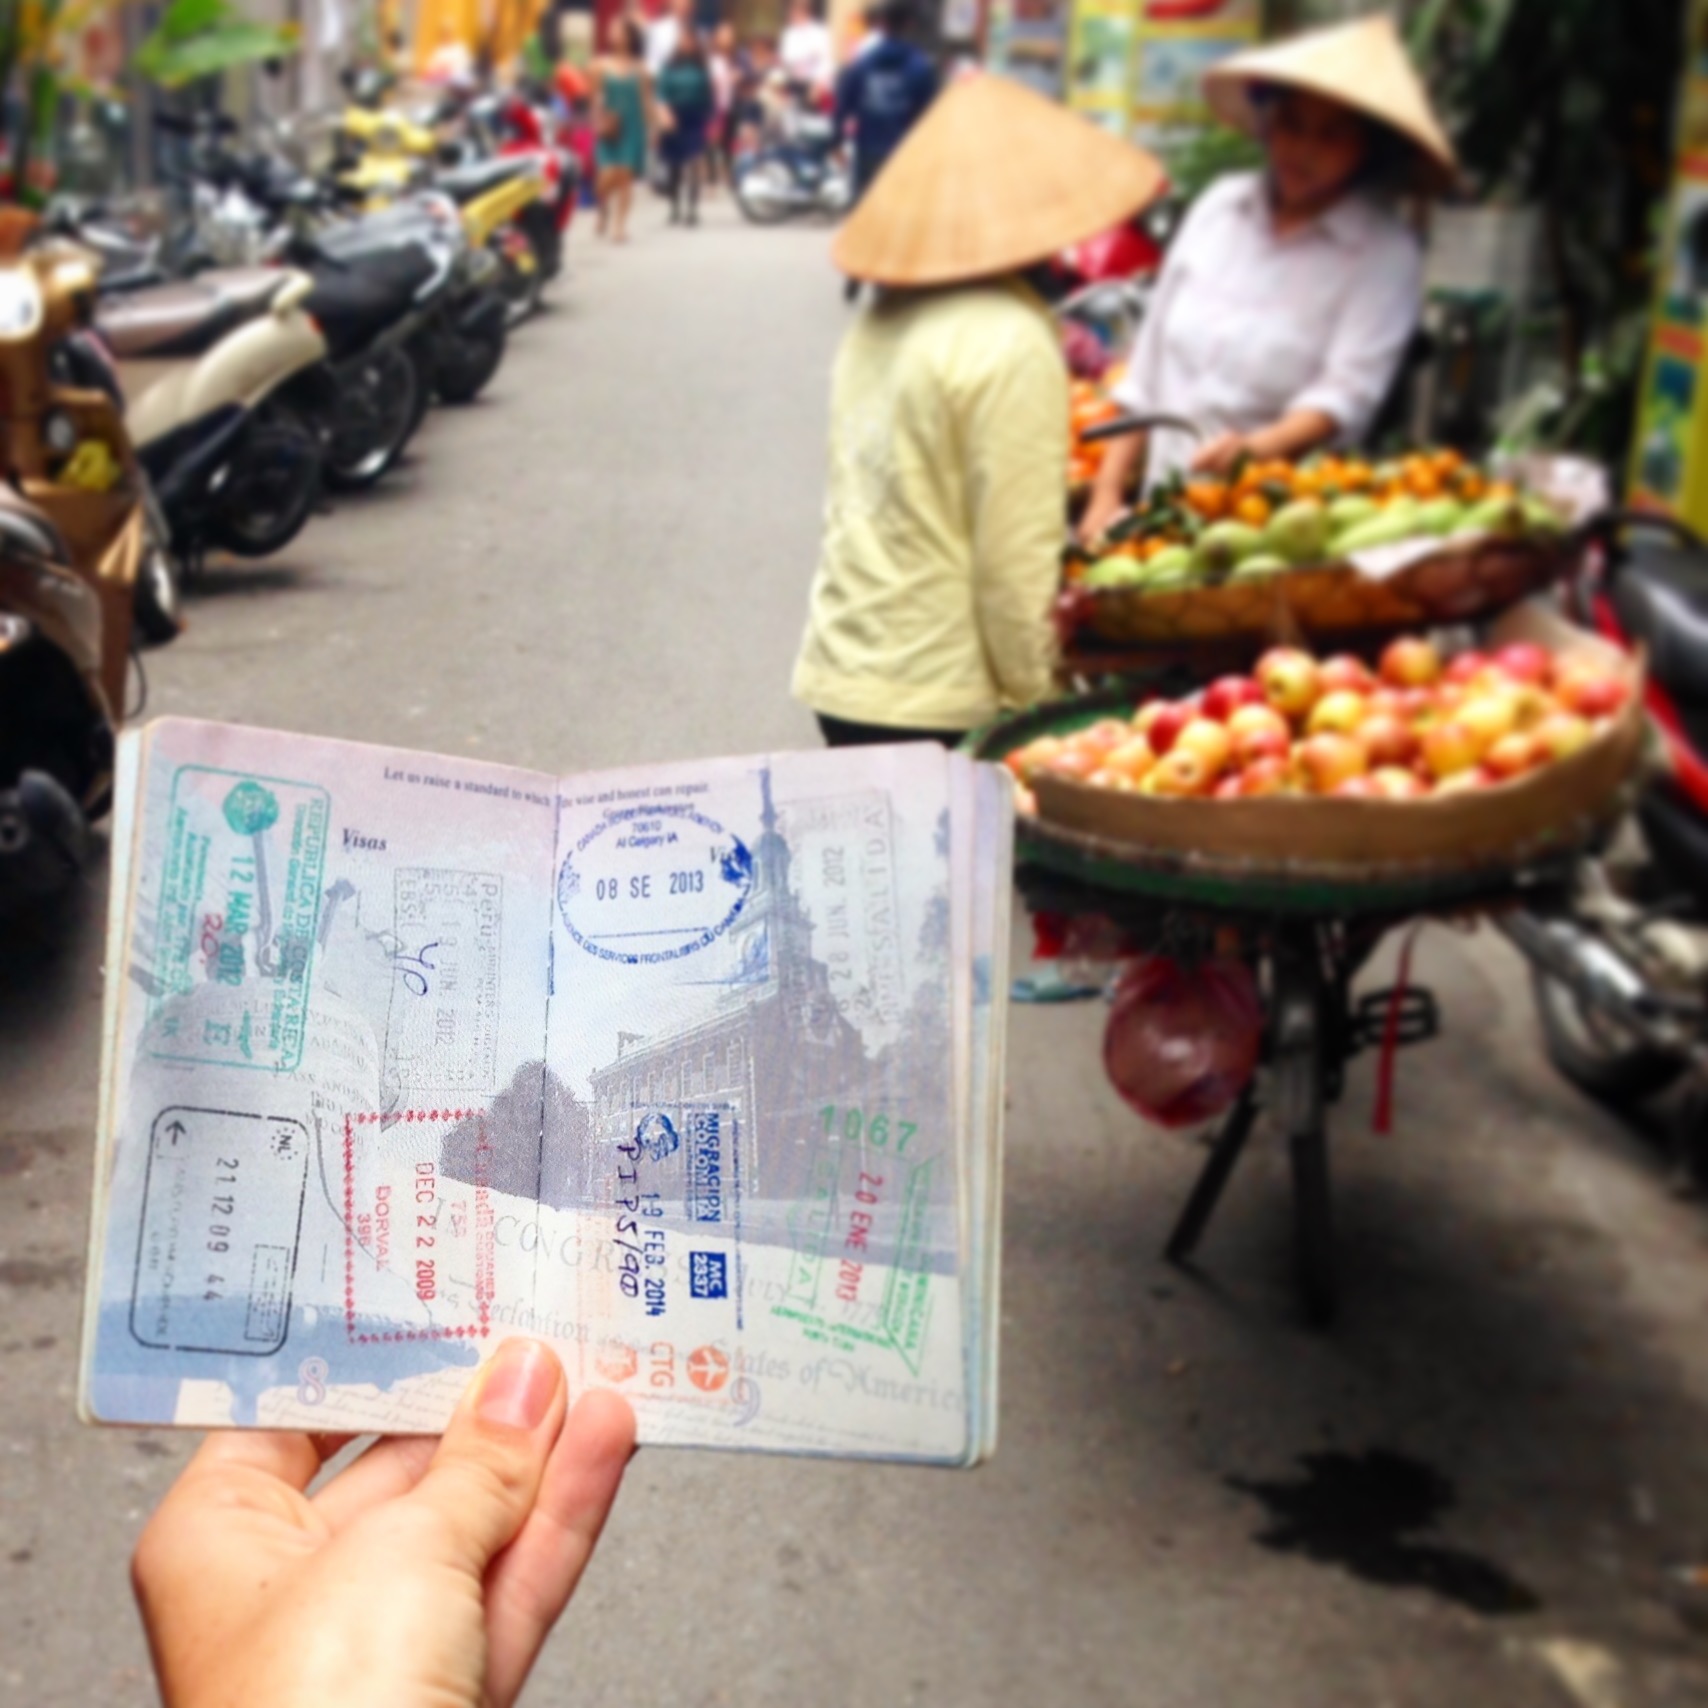 越南护照